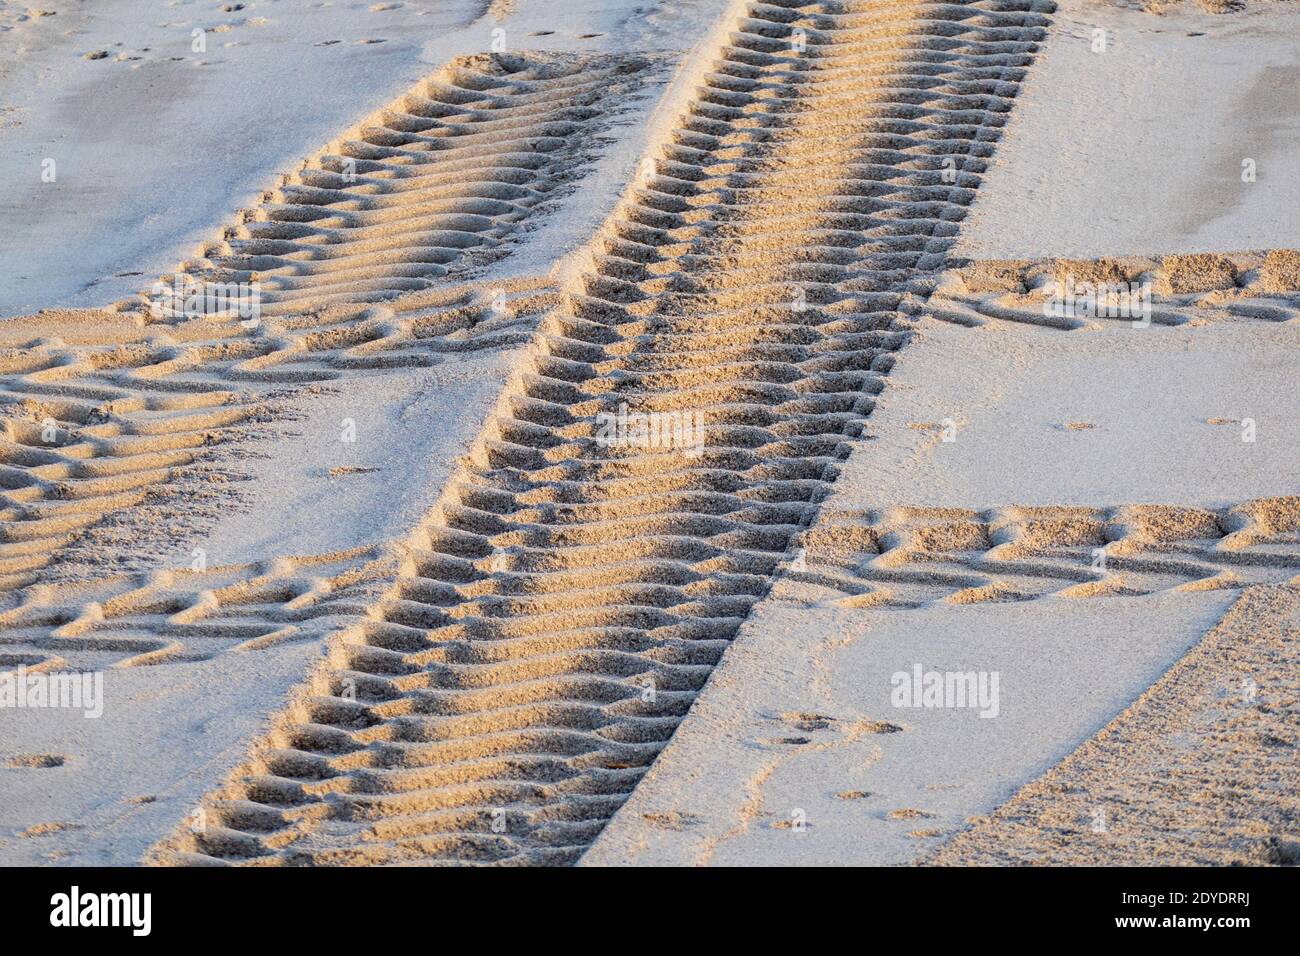 Reifen Spuren im Sand von einem Panzer oder Bagger Stock Photo - Alamy